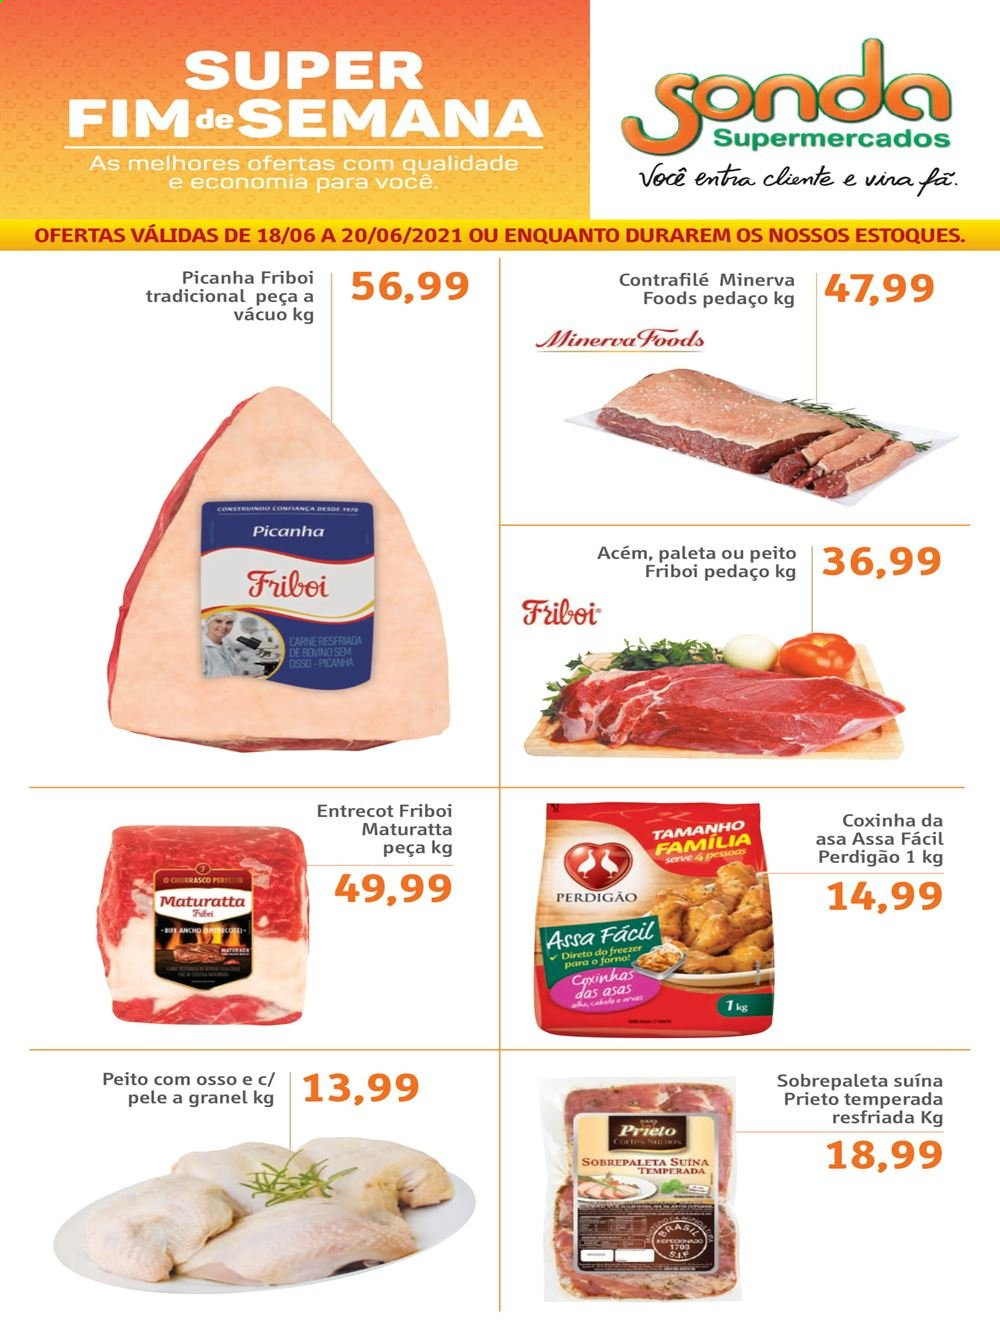 thumbnail - Folheto Sonda Supermercados - 18/06/2021 - 20/06/2021 - Produtos em promoção - Friboi, picanha, carne, Perdigão. Página 1.